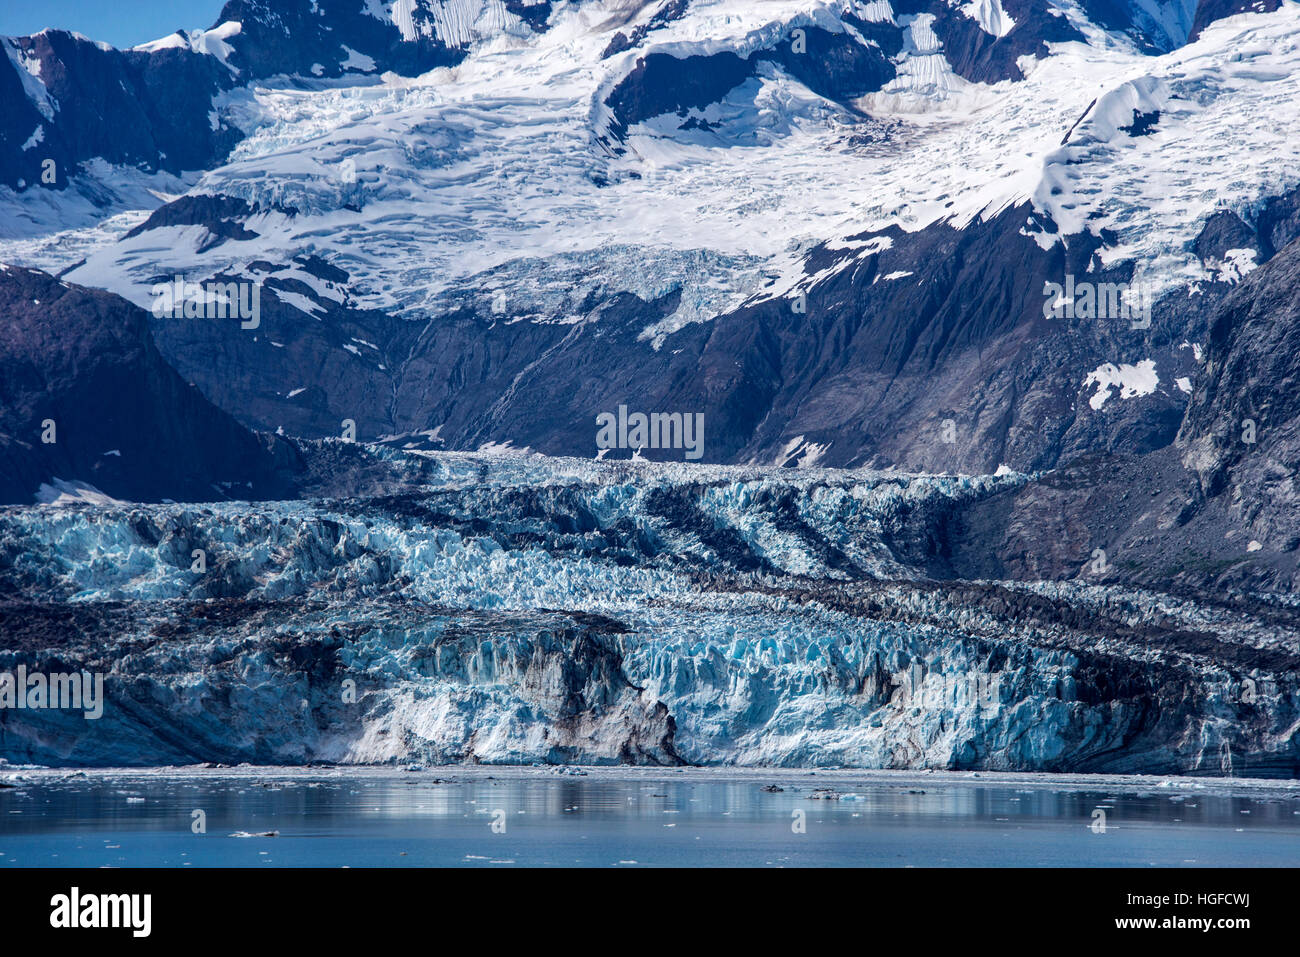 glacier bay national park, Alaska Stock Photo